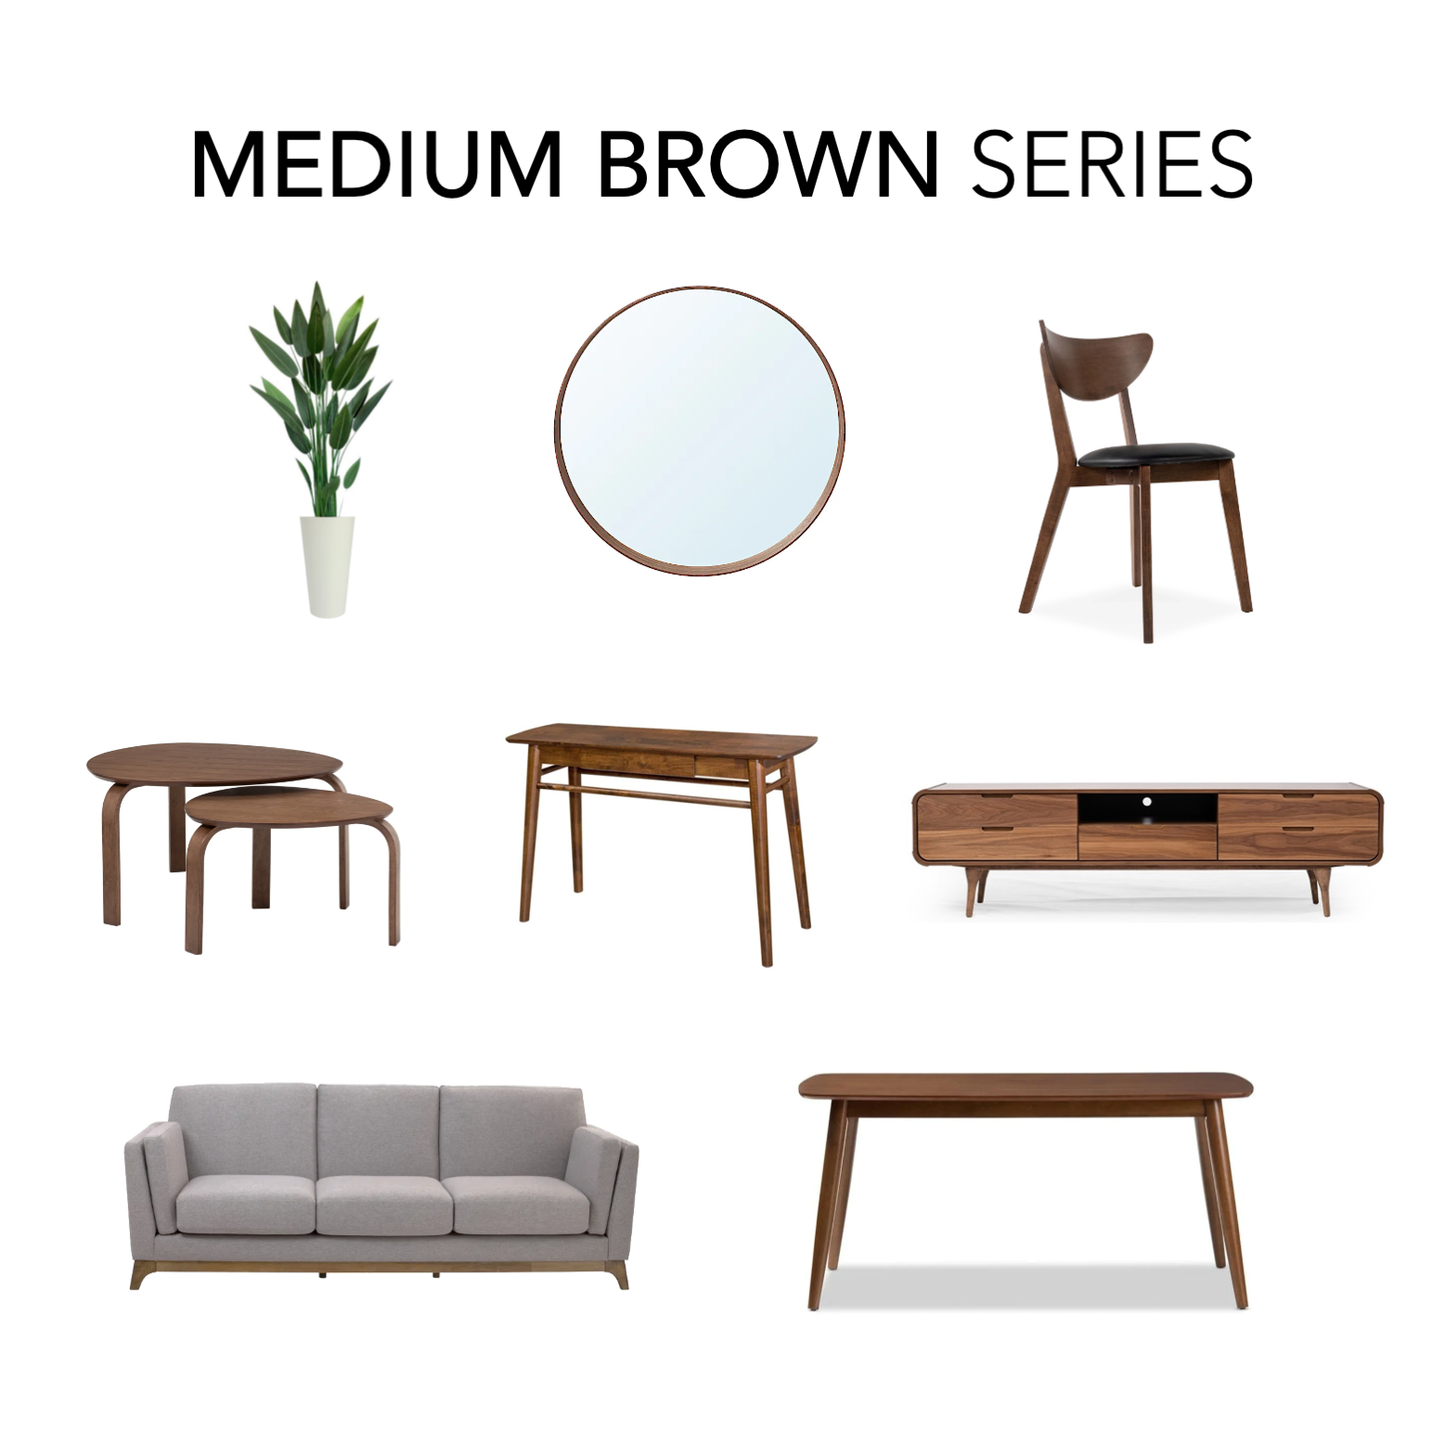 Plus Dining Room & Living Room in Medium Brown